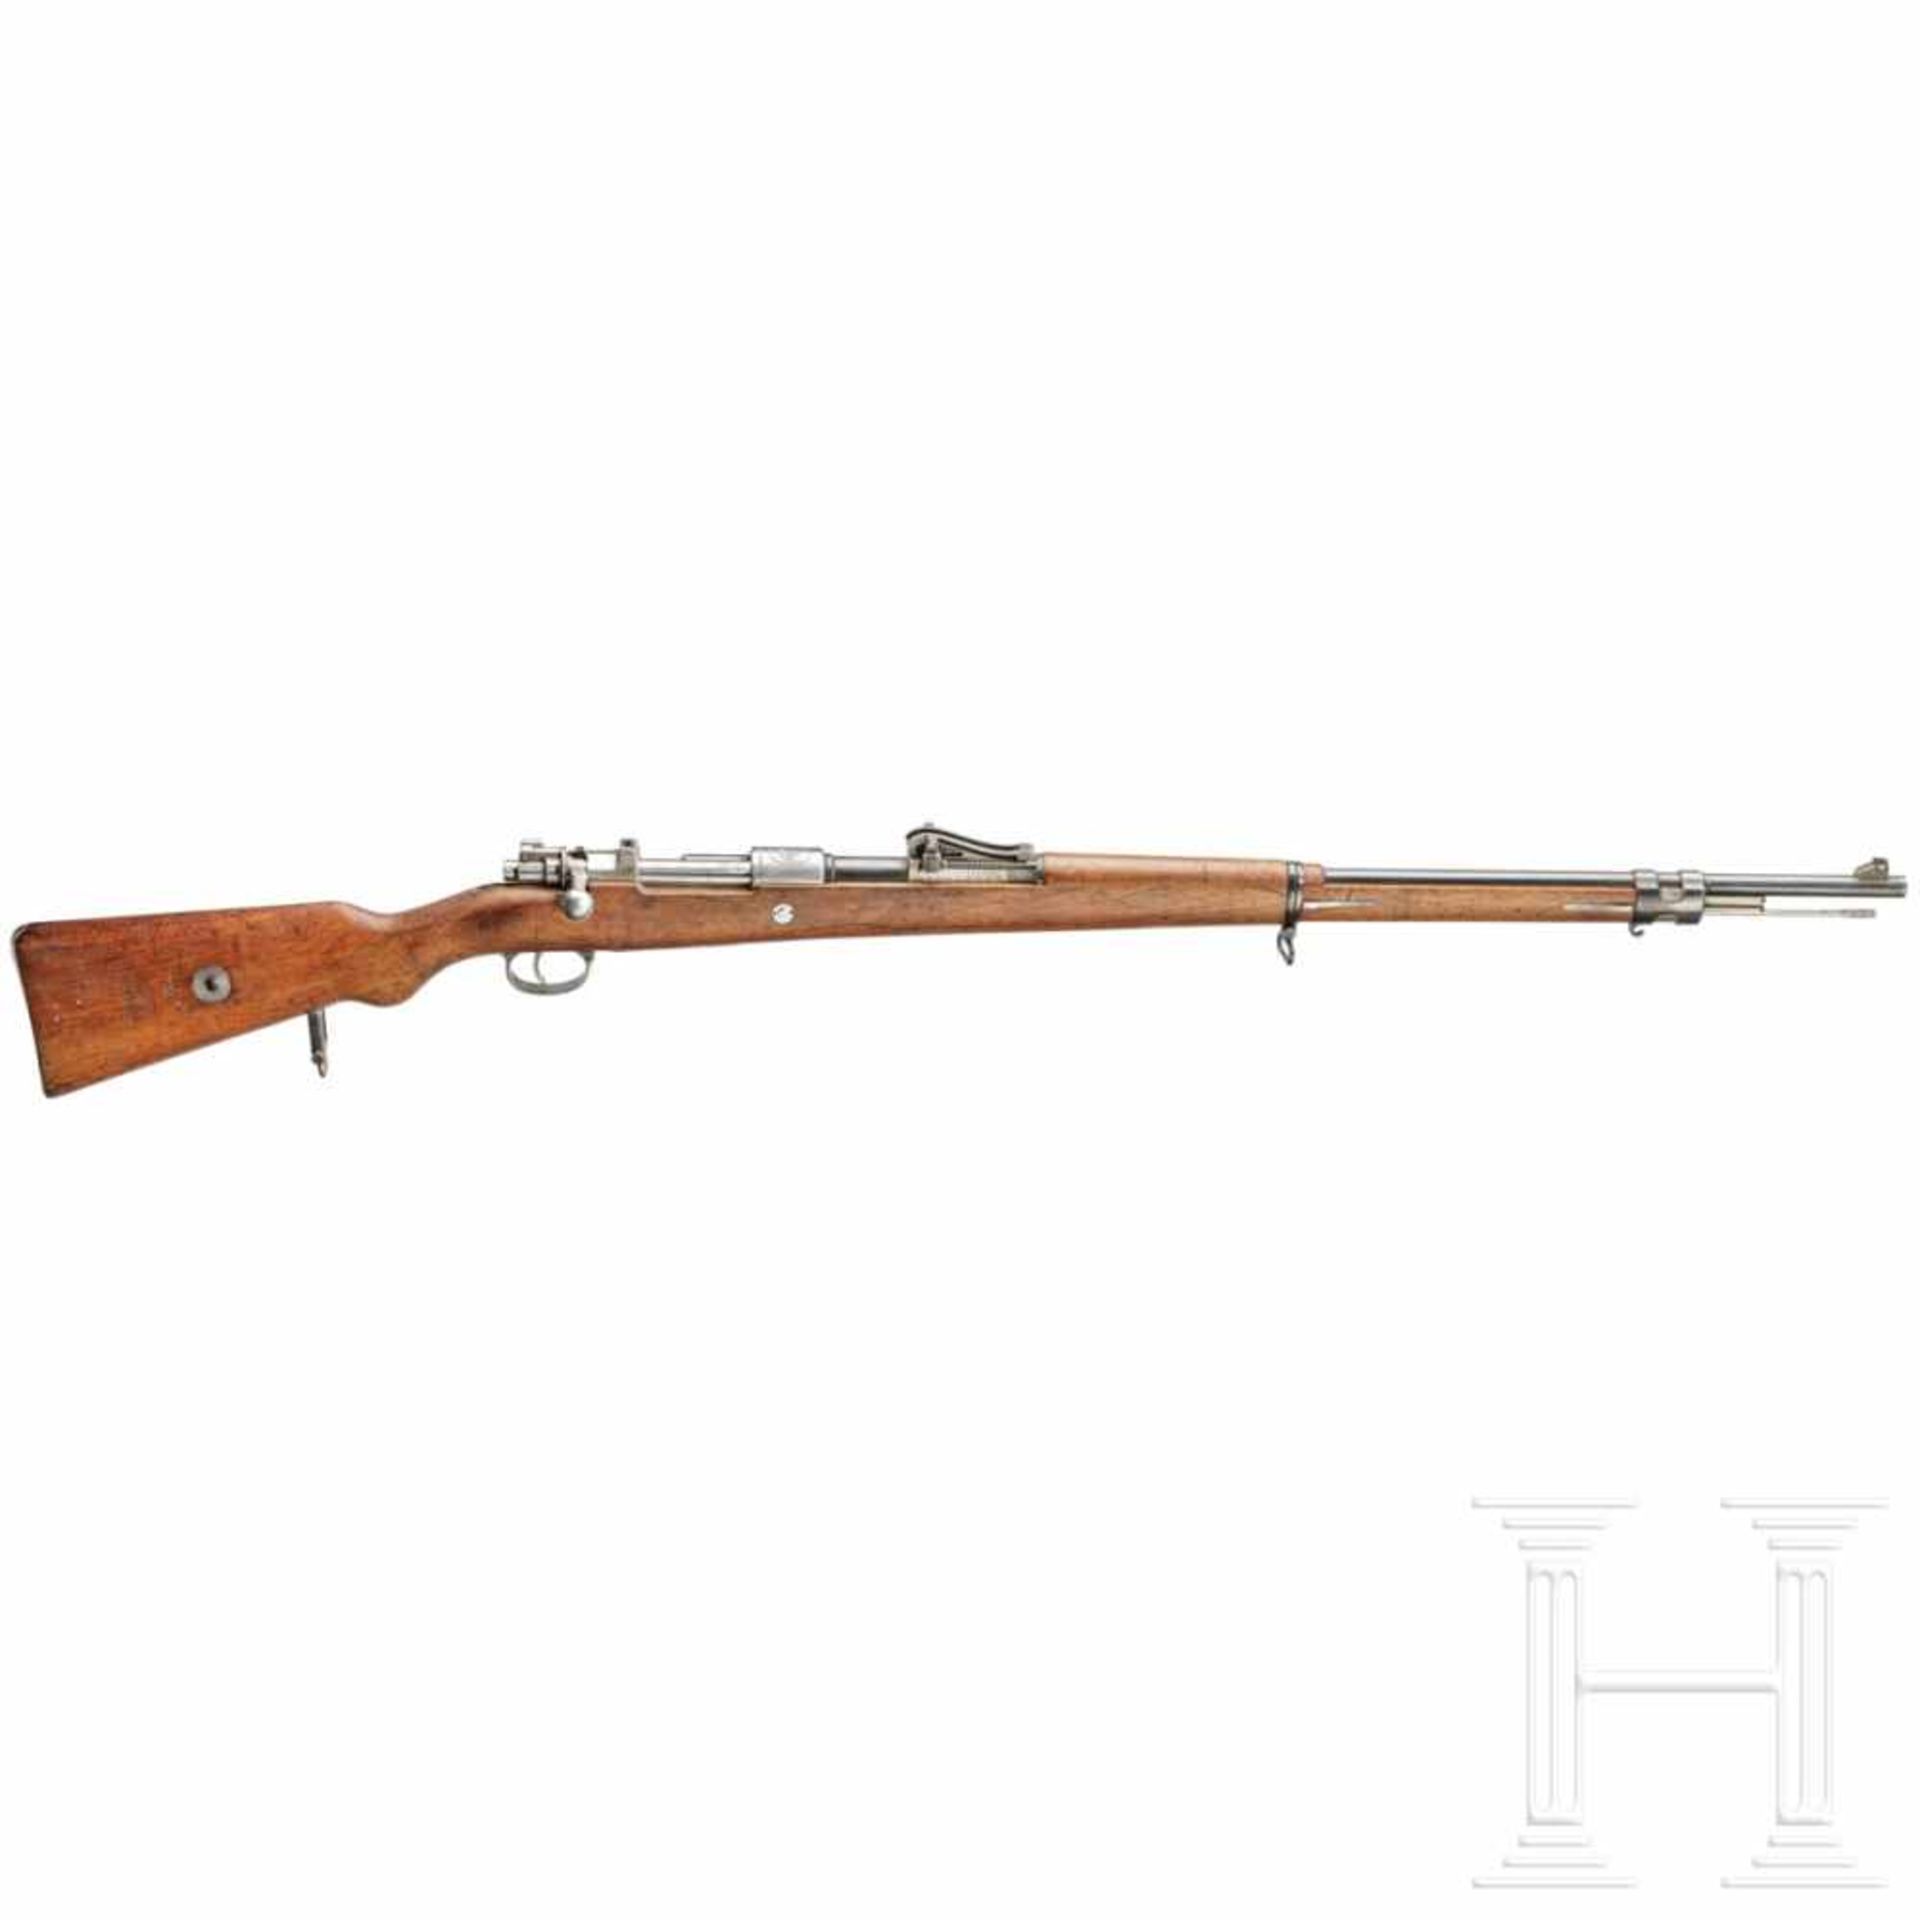 Peru - Gewehr Mauser Mod. 1909Kal. 7,65x53, Nr. 22165, nummerngleich. Blanker Lauf. Fünfschüssig.